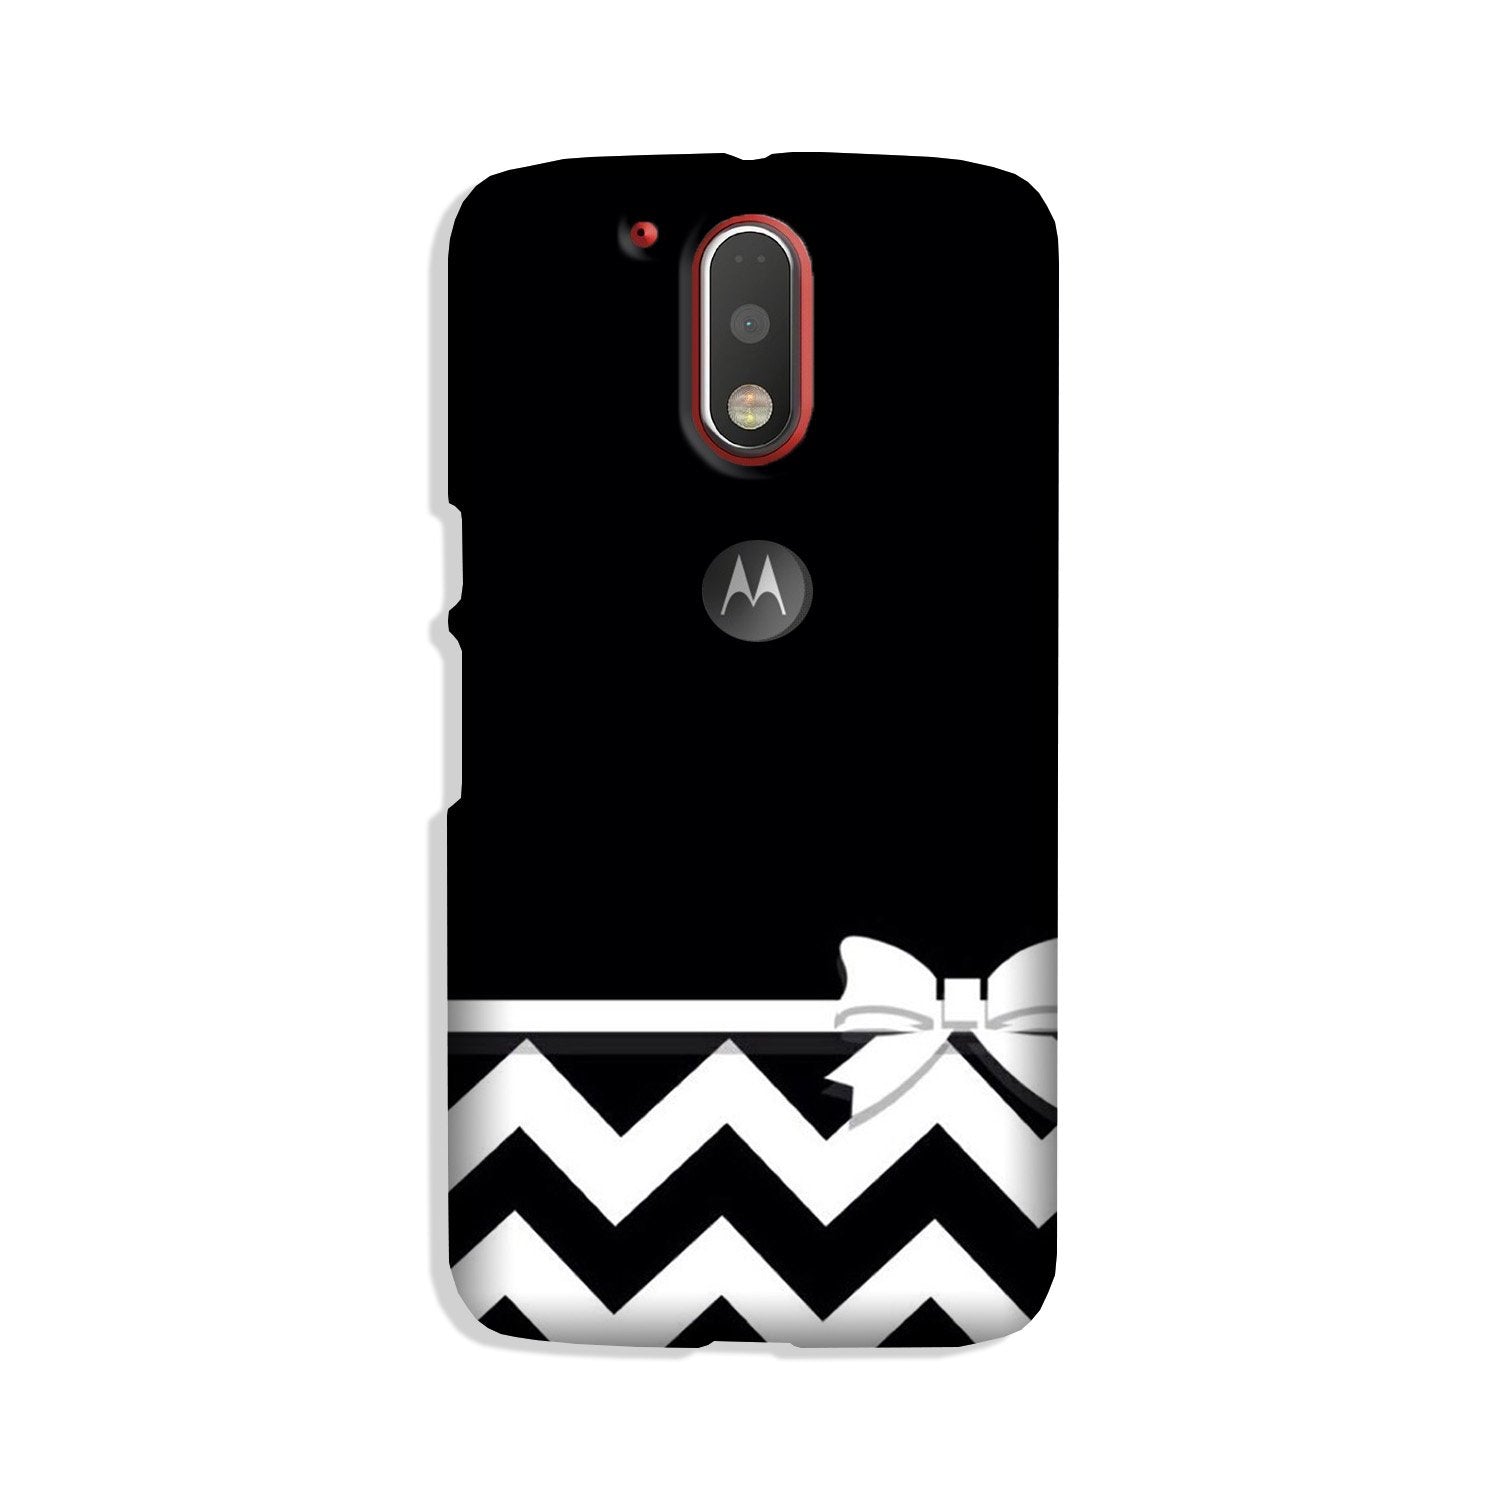 Gift Wrap7 Case for Moto G4 Plus